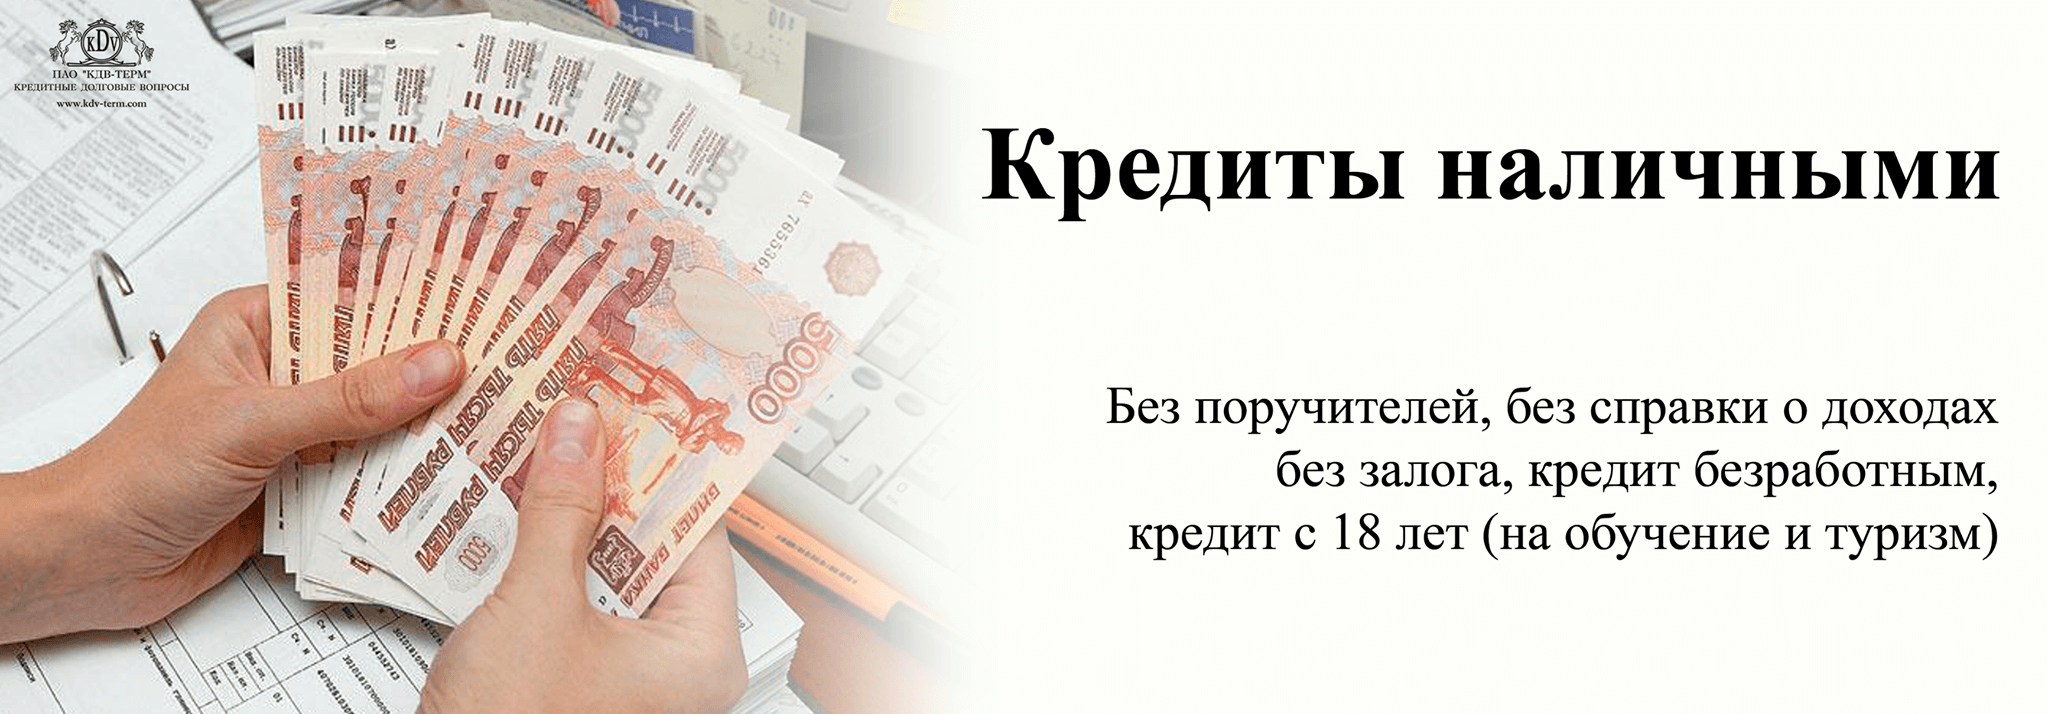 Займы наличными в Новосибирске без проверок по паспорту срочно на карту мгновенно